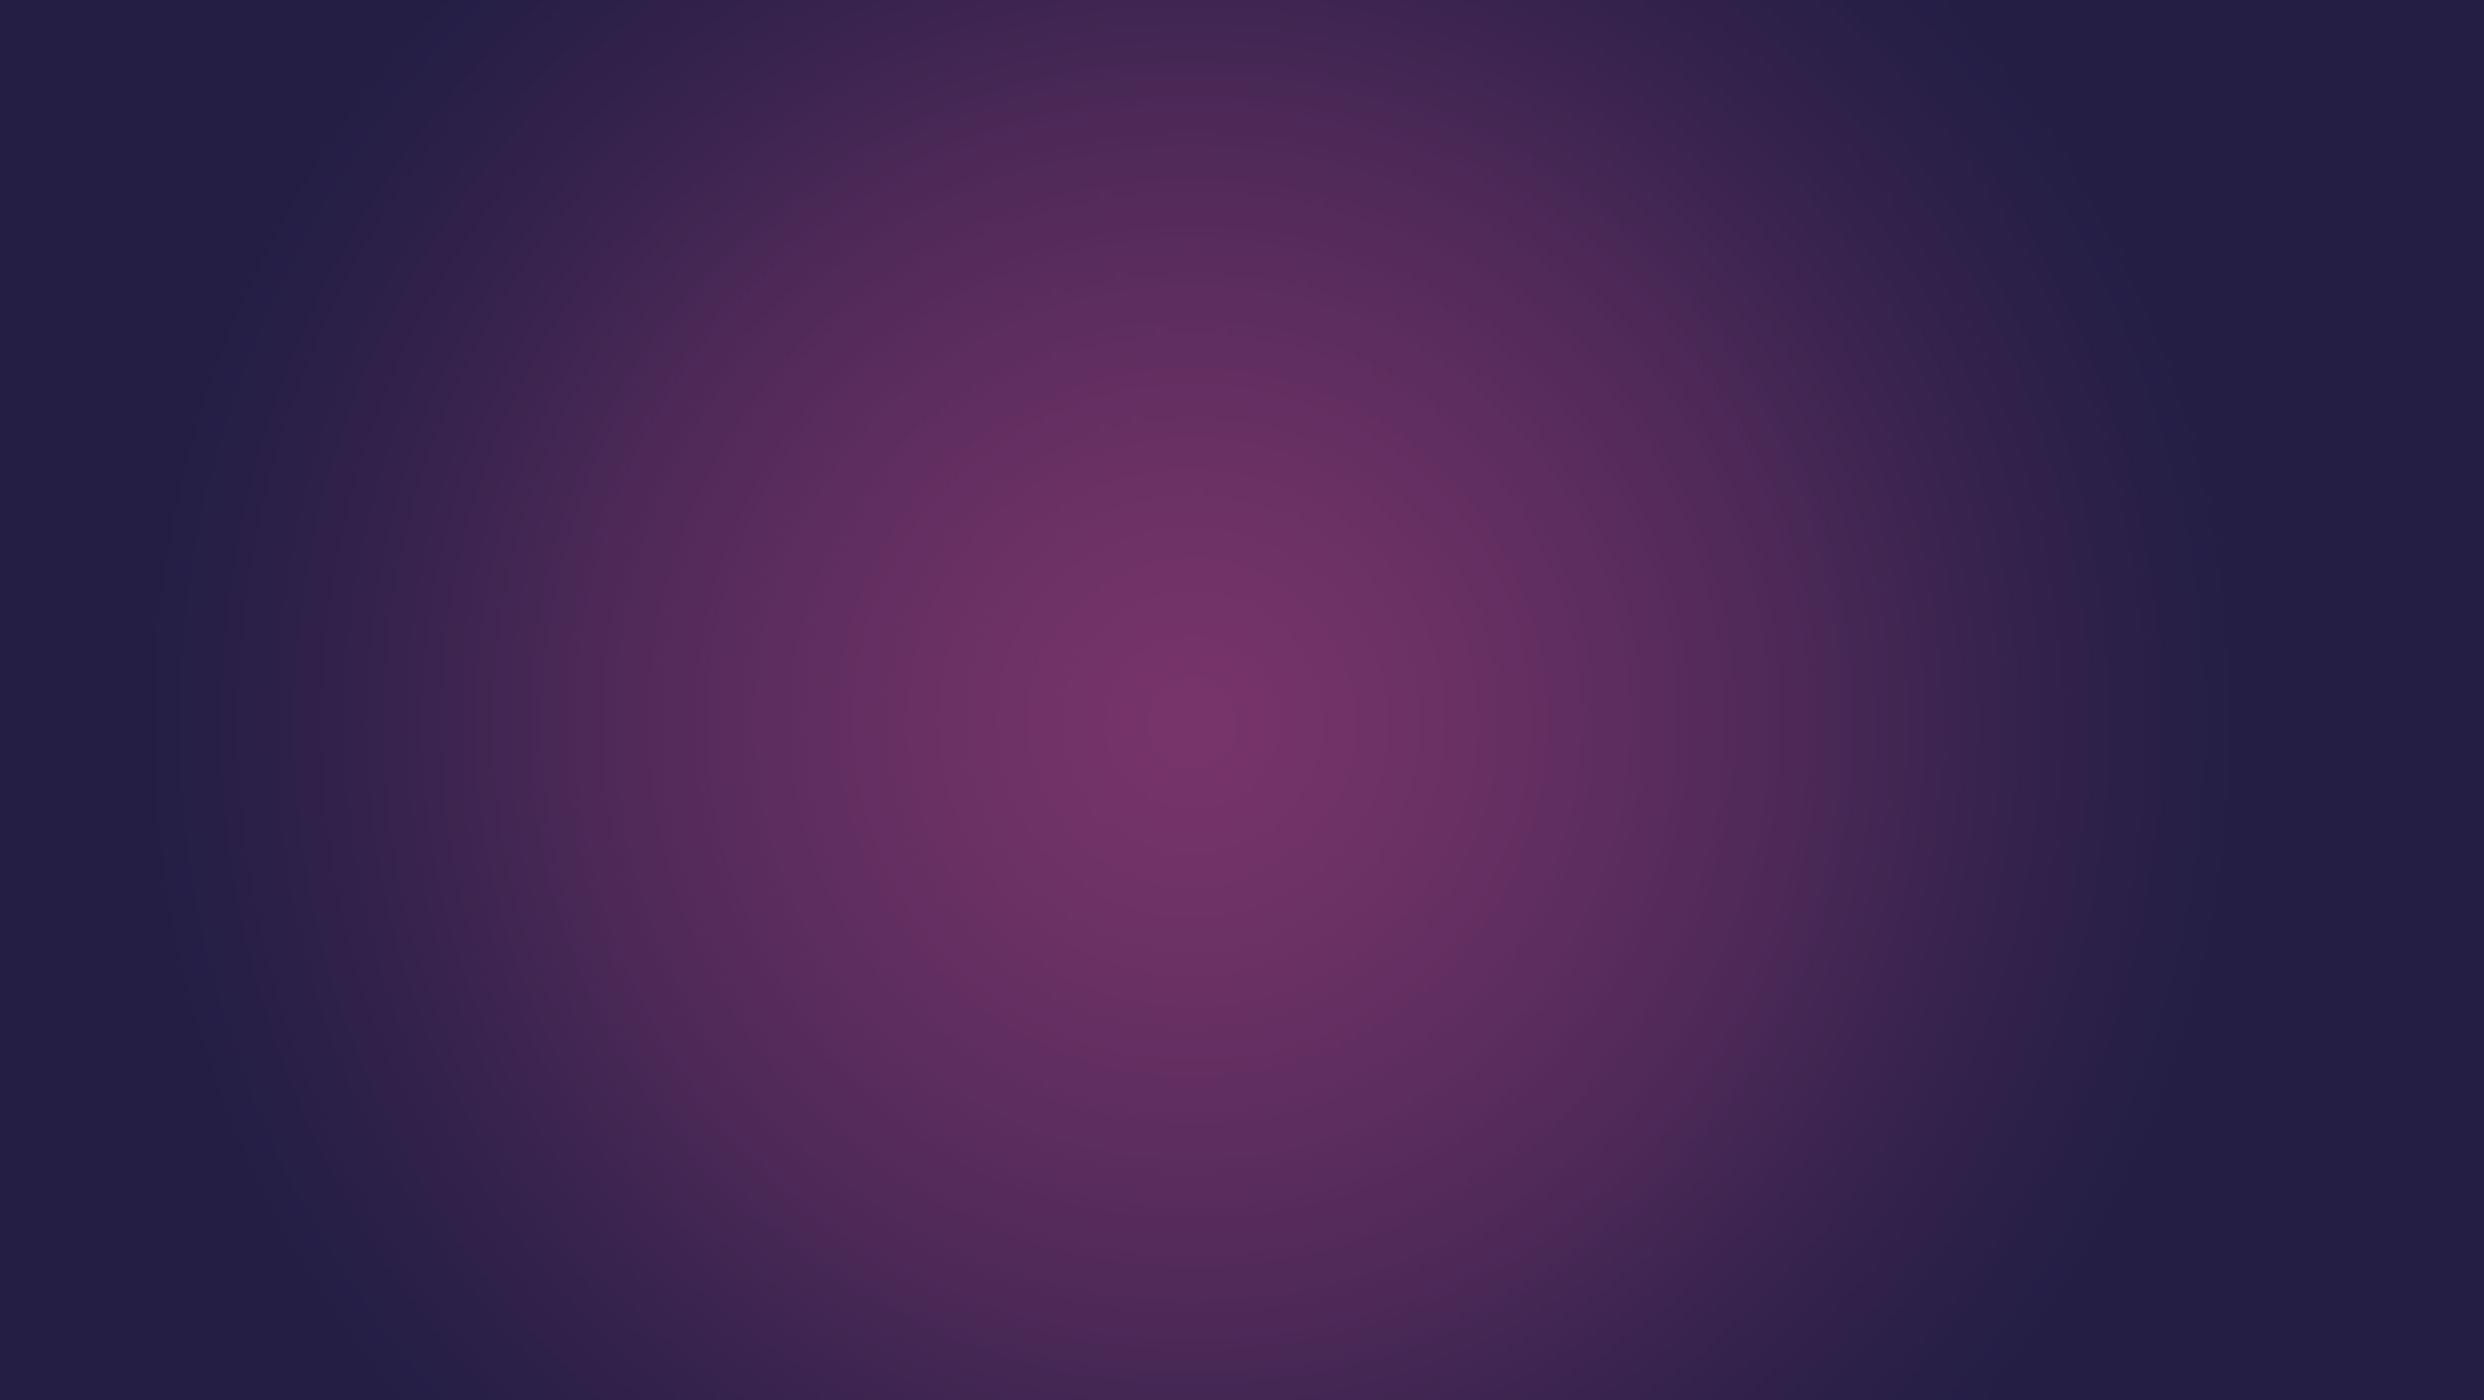 purple bg